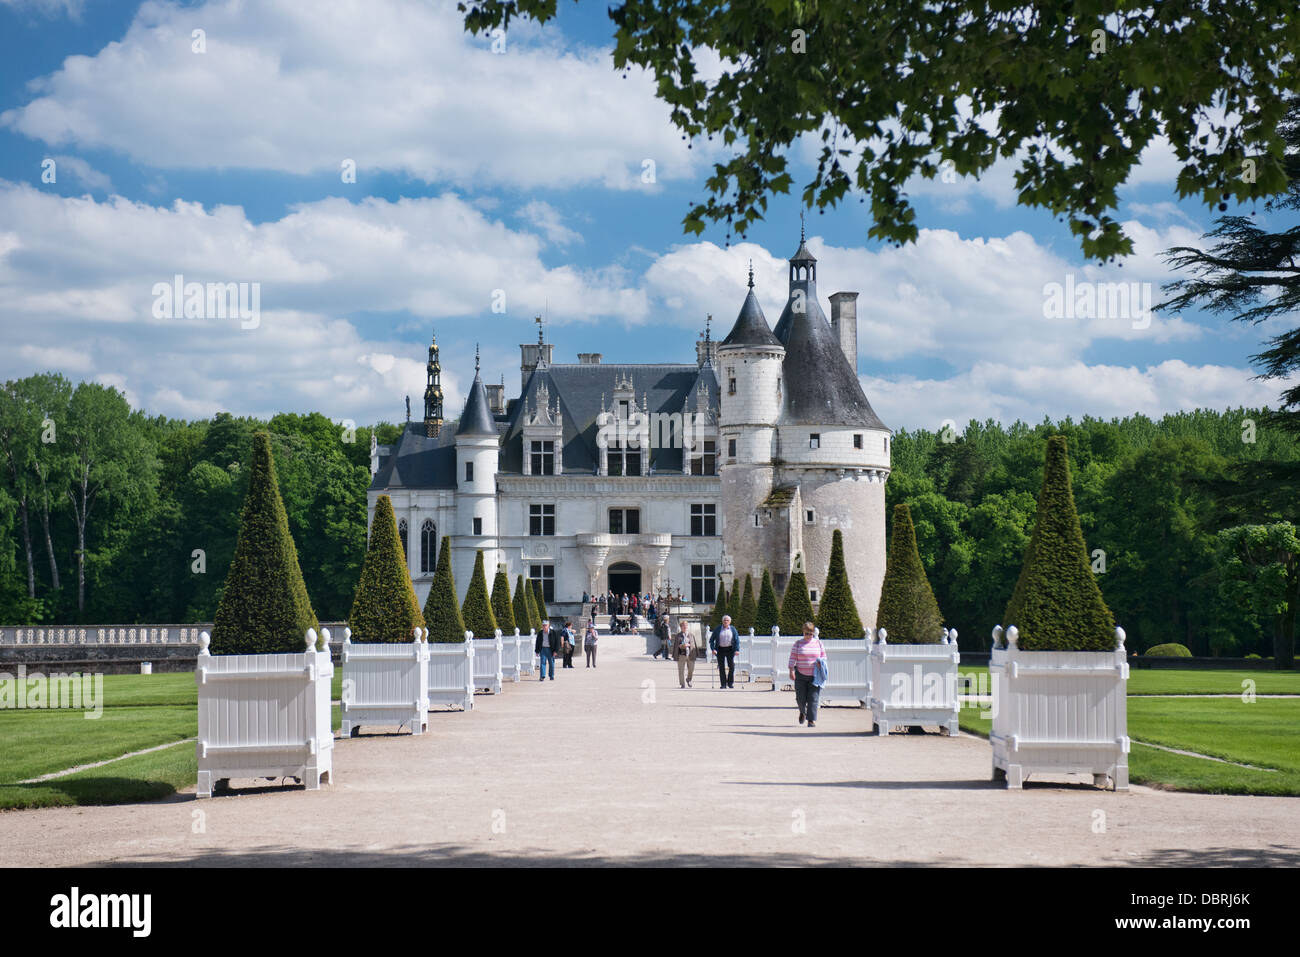 Les touristes à marcher le long de l'avenue menant à l'historique quartier français Château Chenonceau, dans la vallée de la Loire, France Banque D'Images